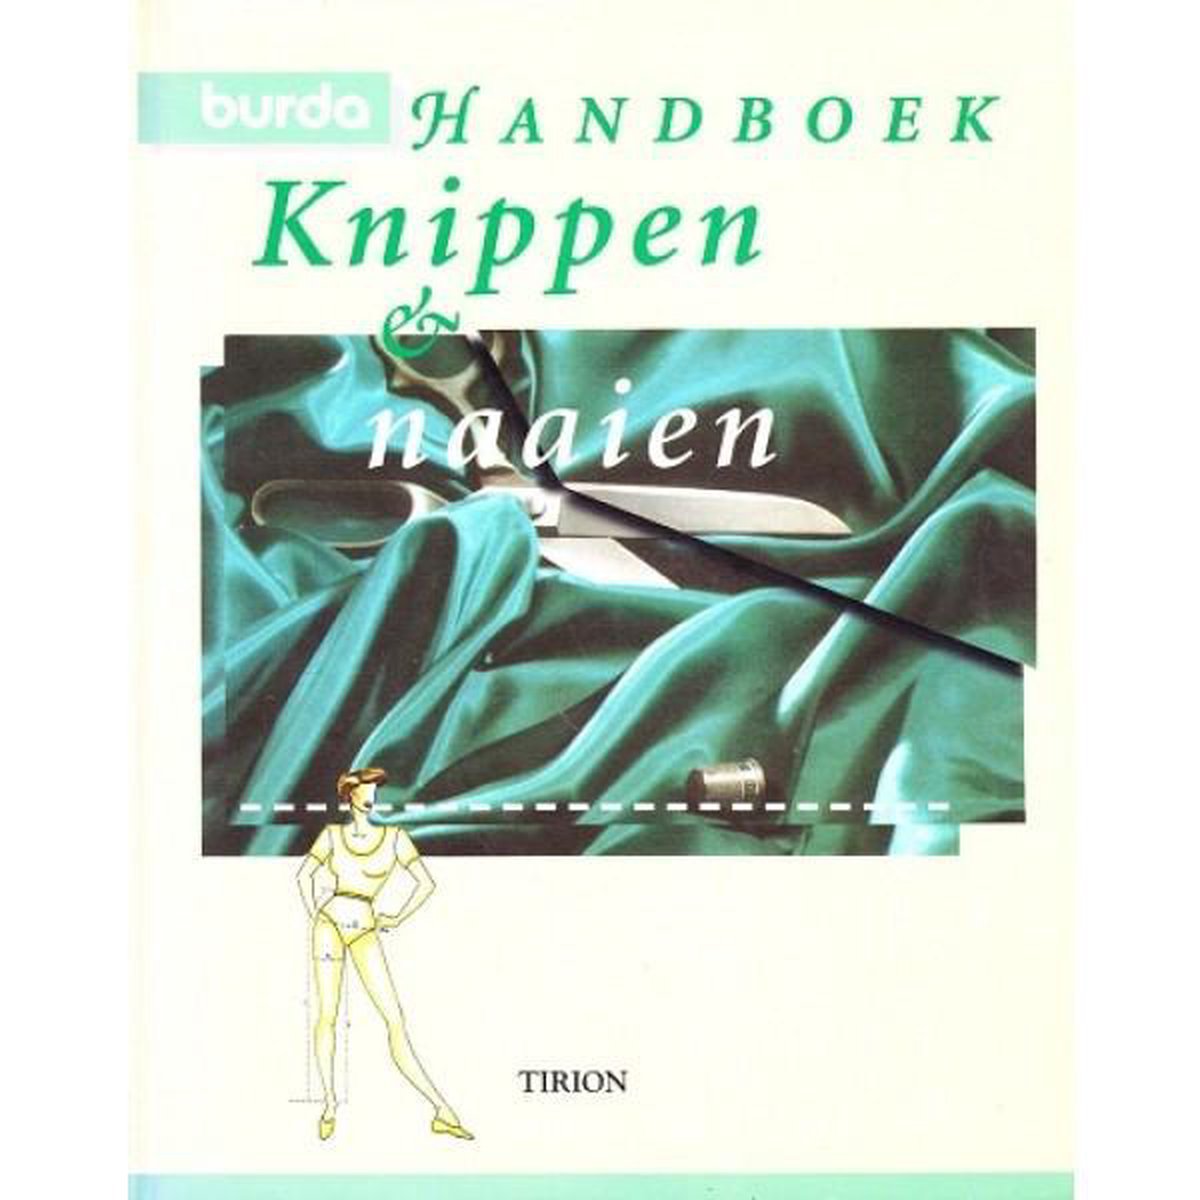 Burda Handboek Knippen En Naaien